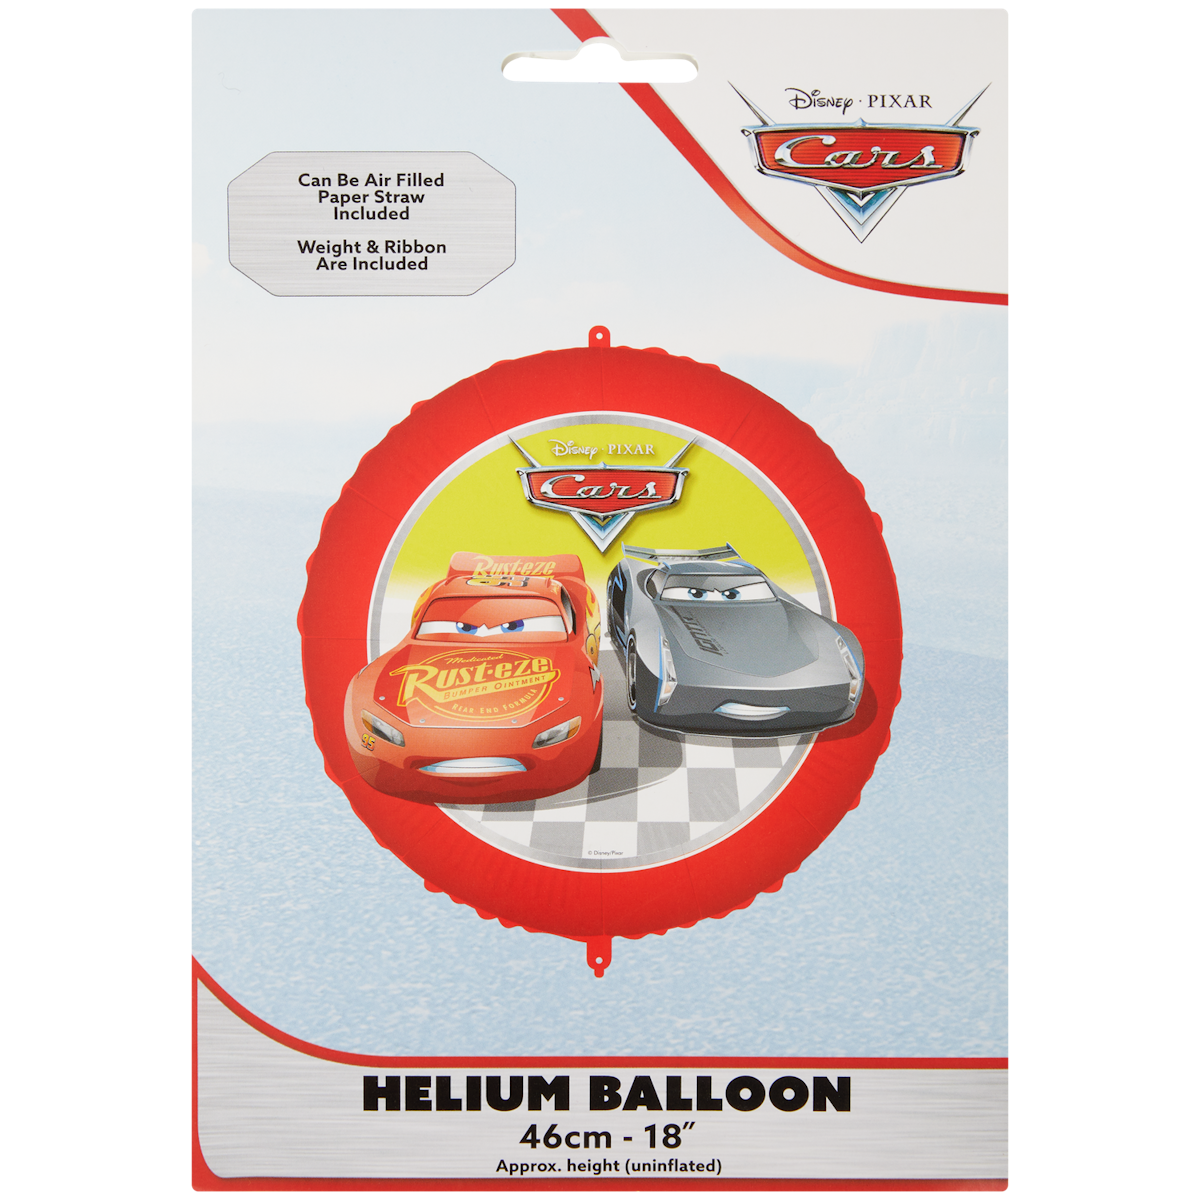 Folienballon